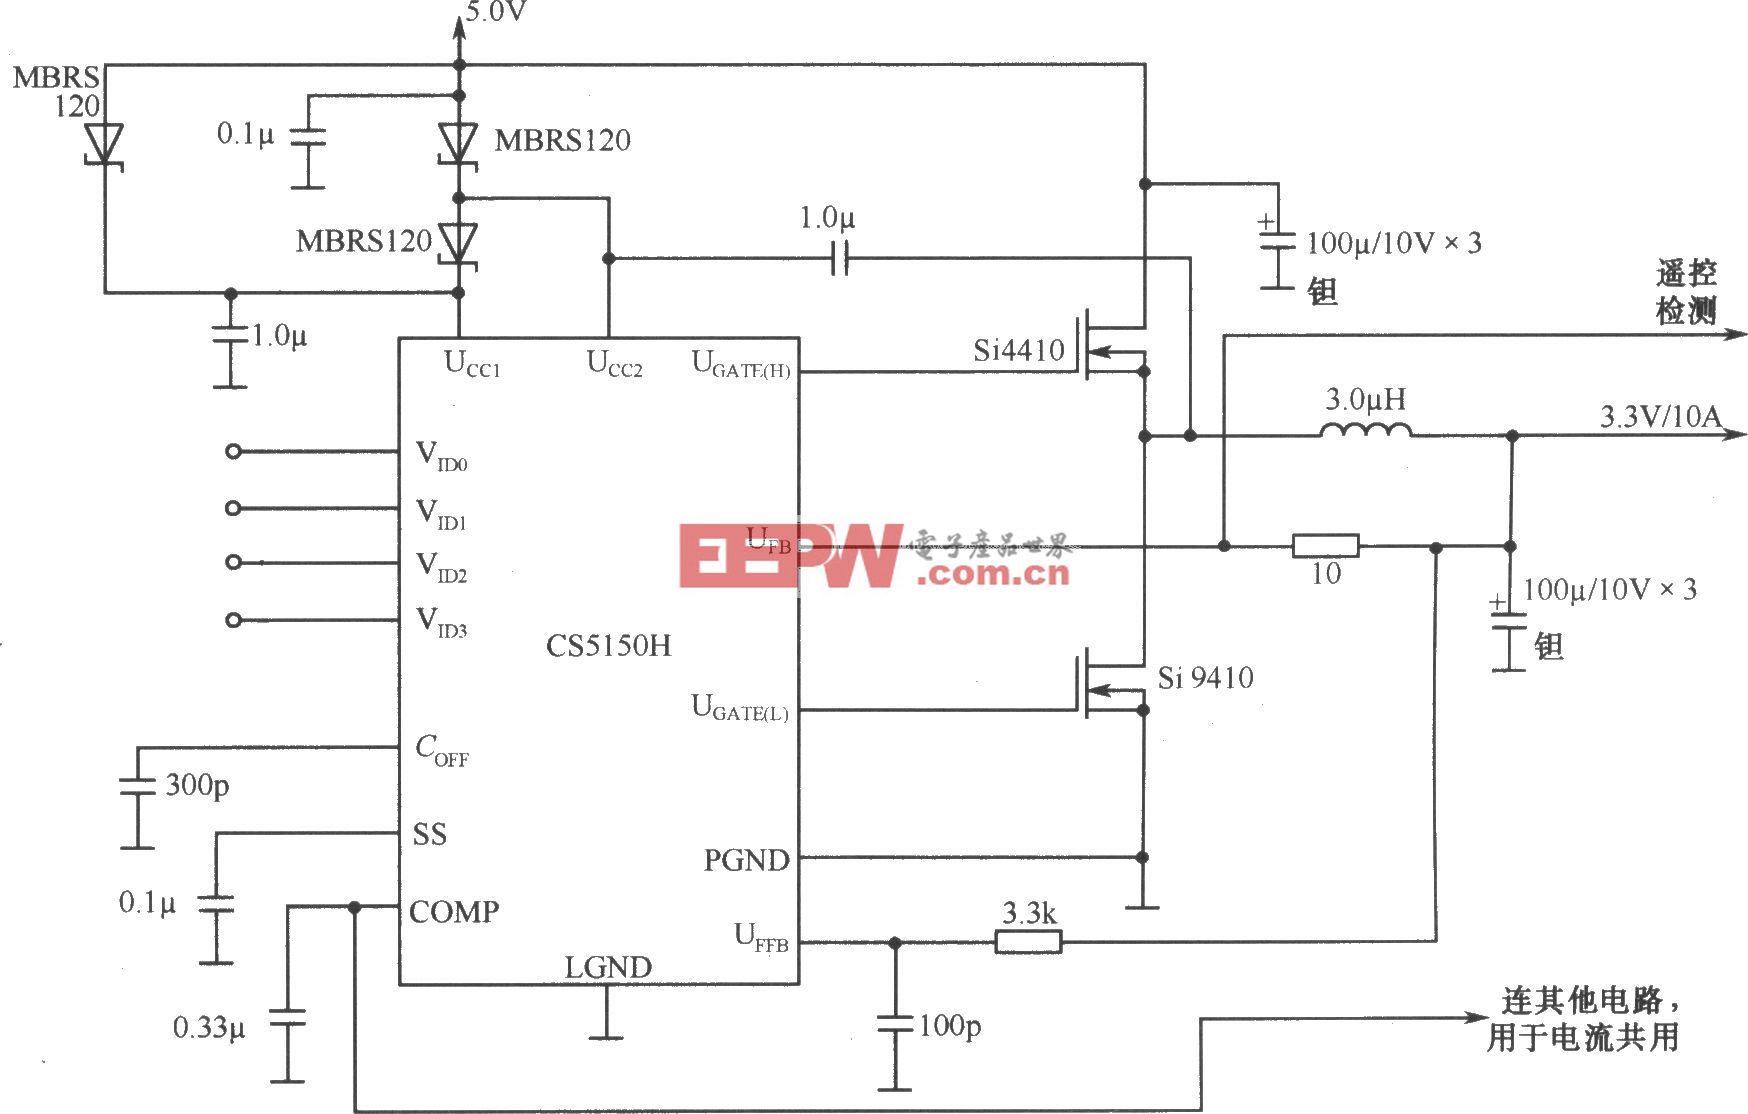 4位编码同步降压控制器CS5150H构成的有电流共用的5.0V至3.3V／10A变换器